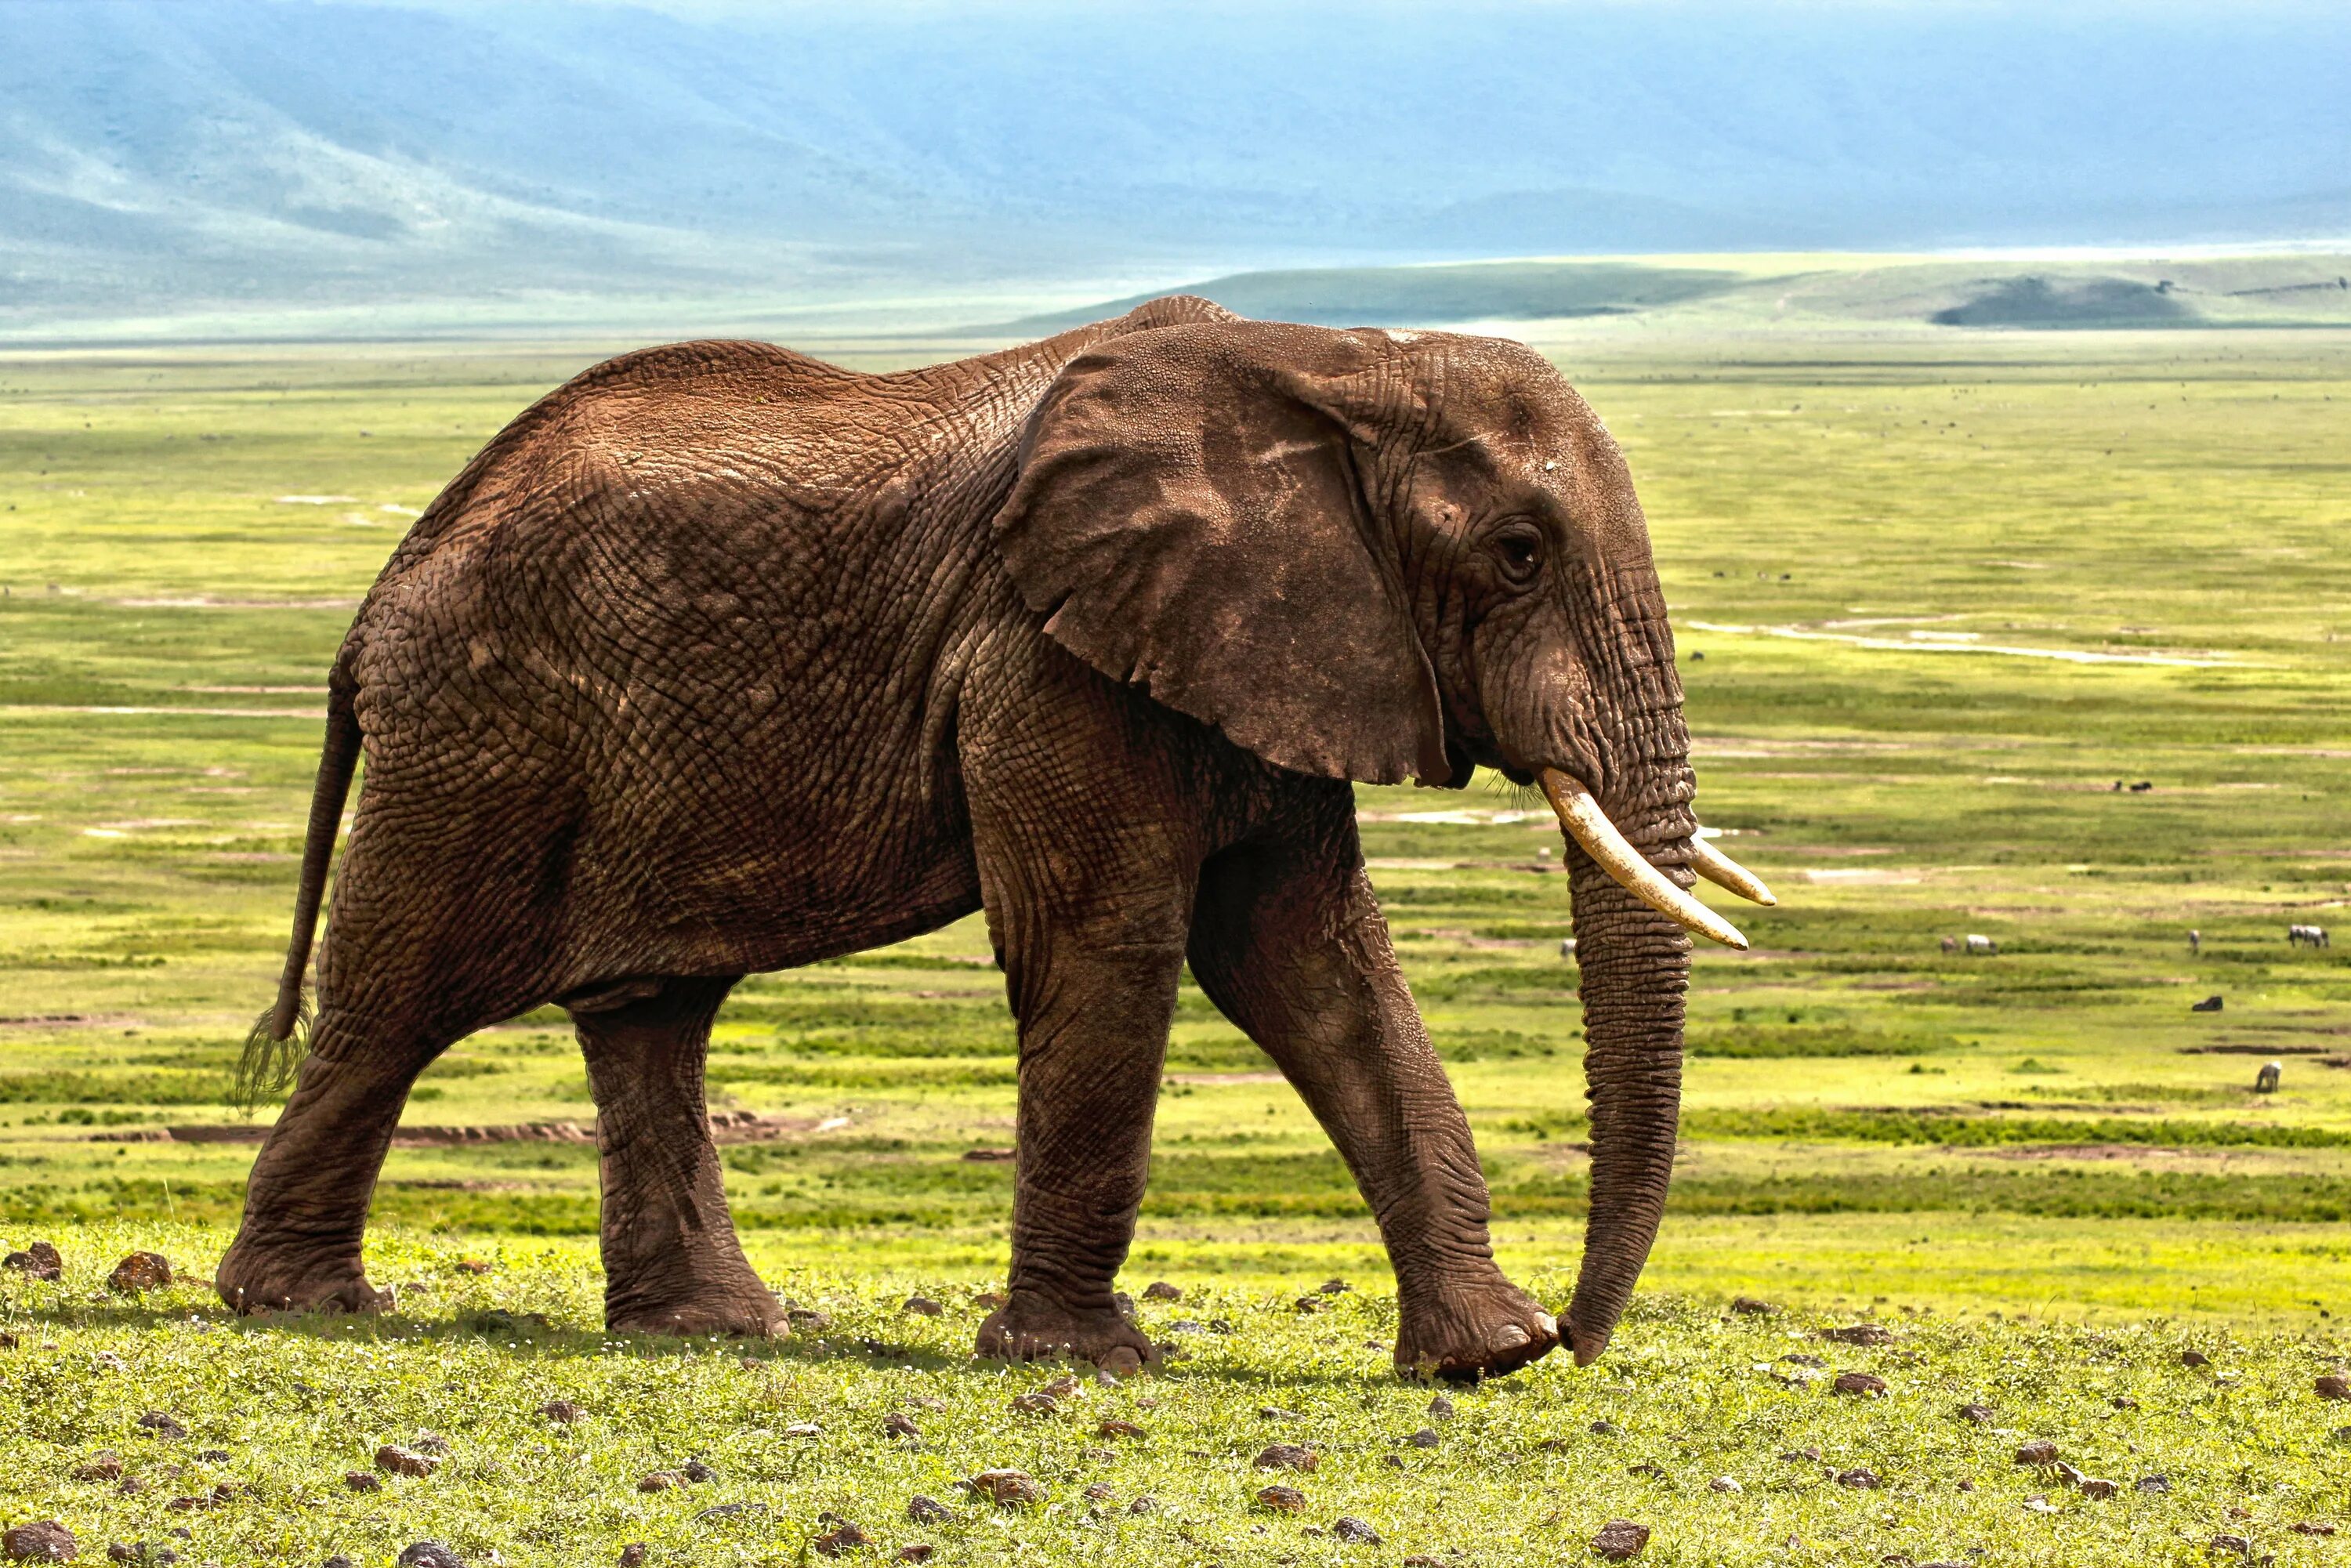 Elephants are big cats. Африканские животные. Слон животное. Слон в Африке. Животные Африки слоны.